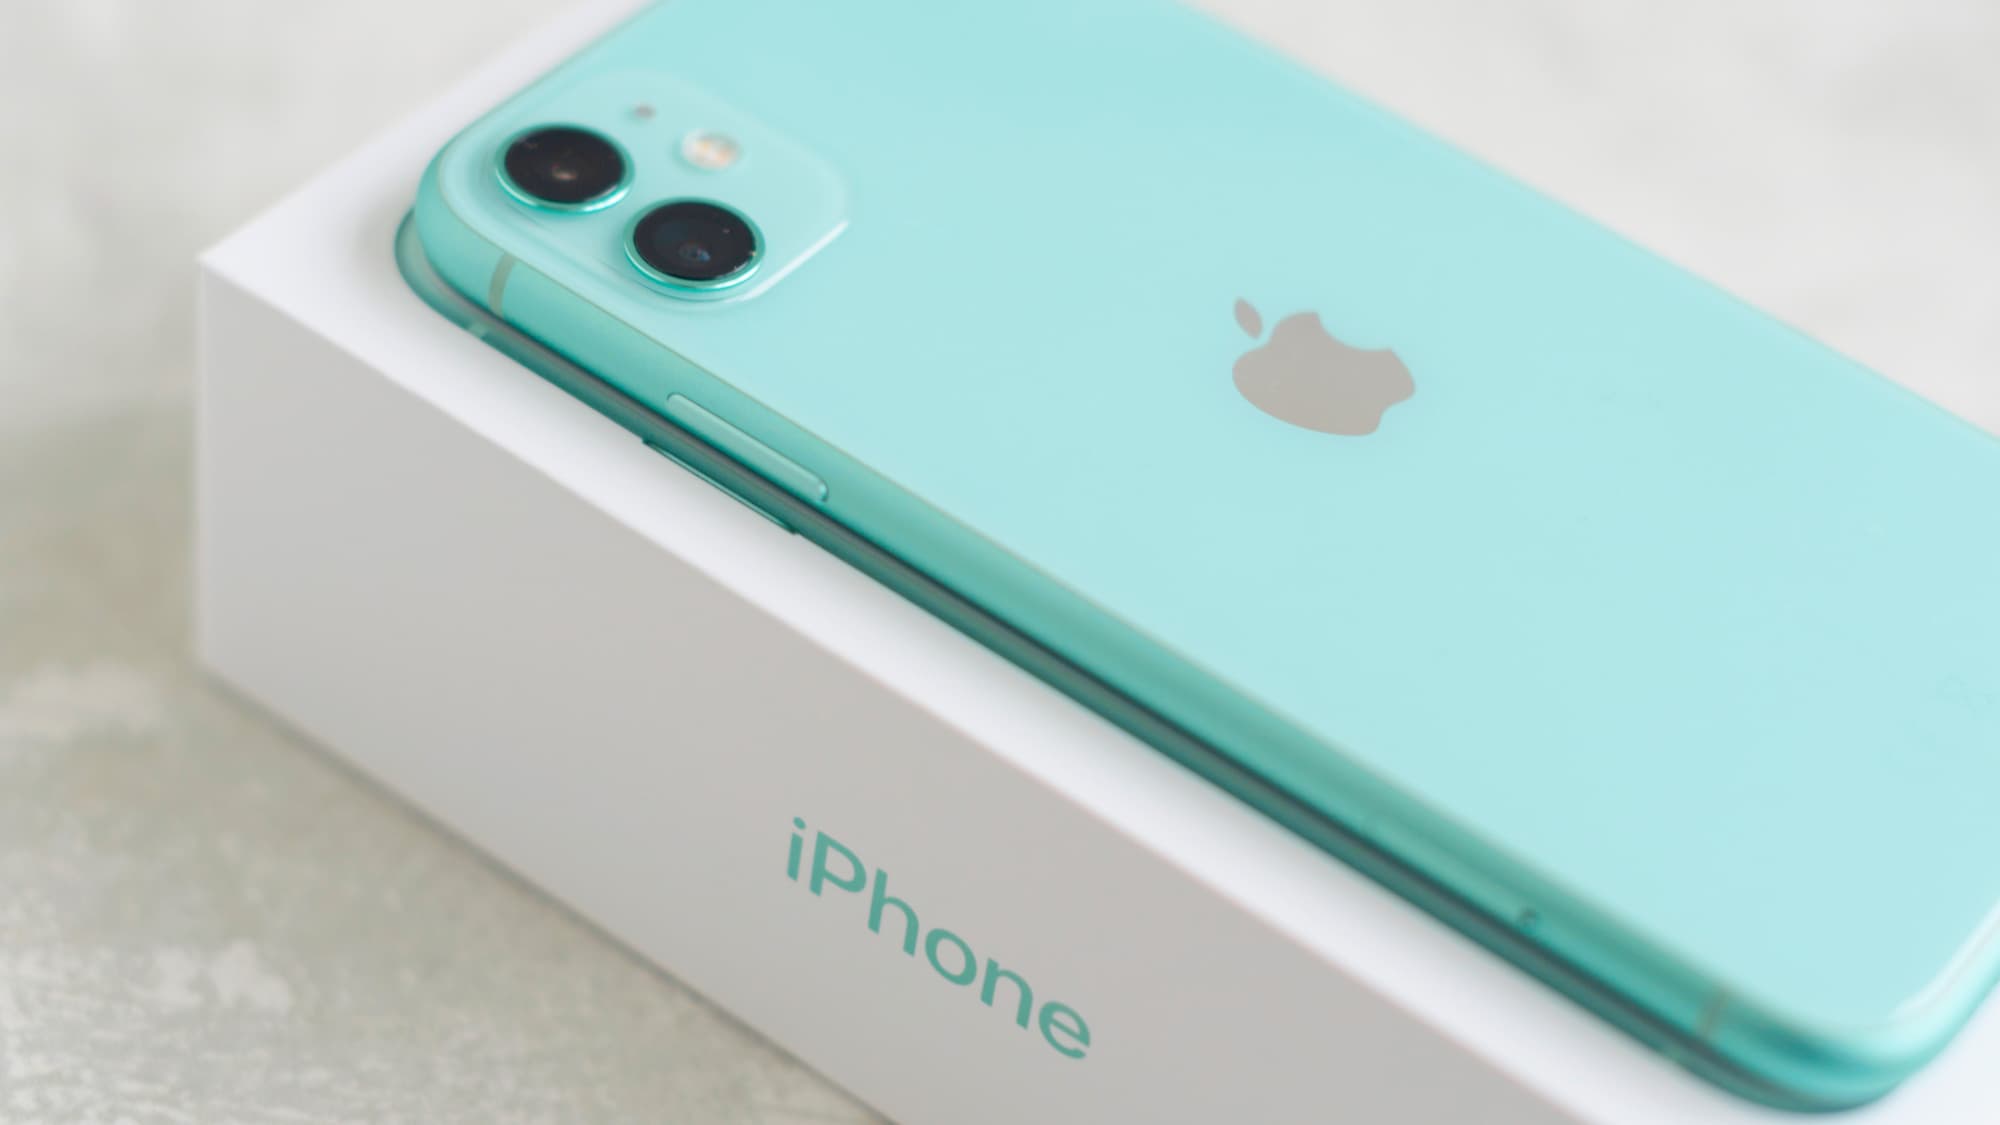 Offre exceptionnelle pour acquérir l'iPhone 11 à prix cassé chez SFR